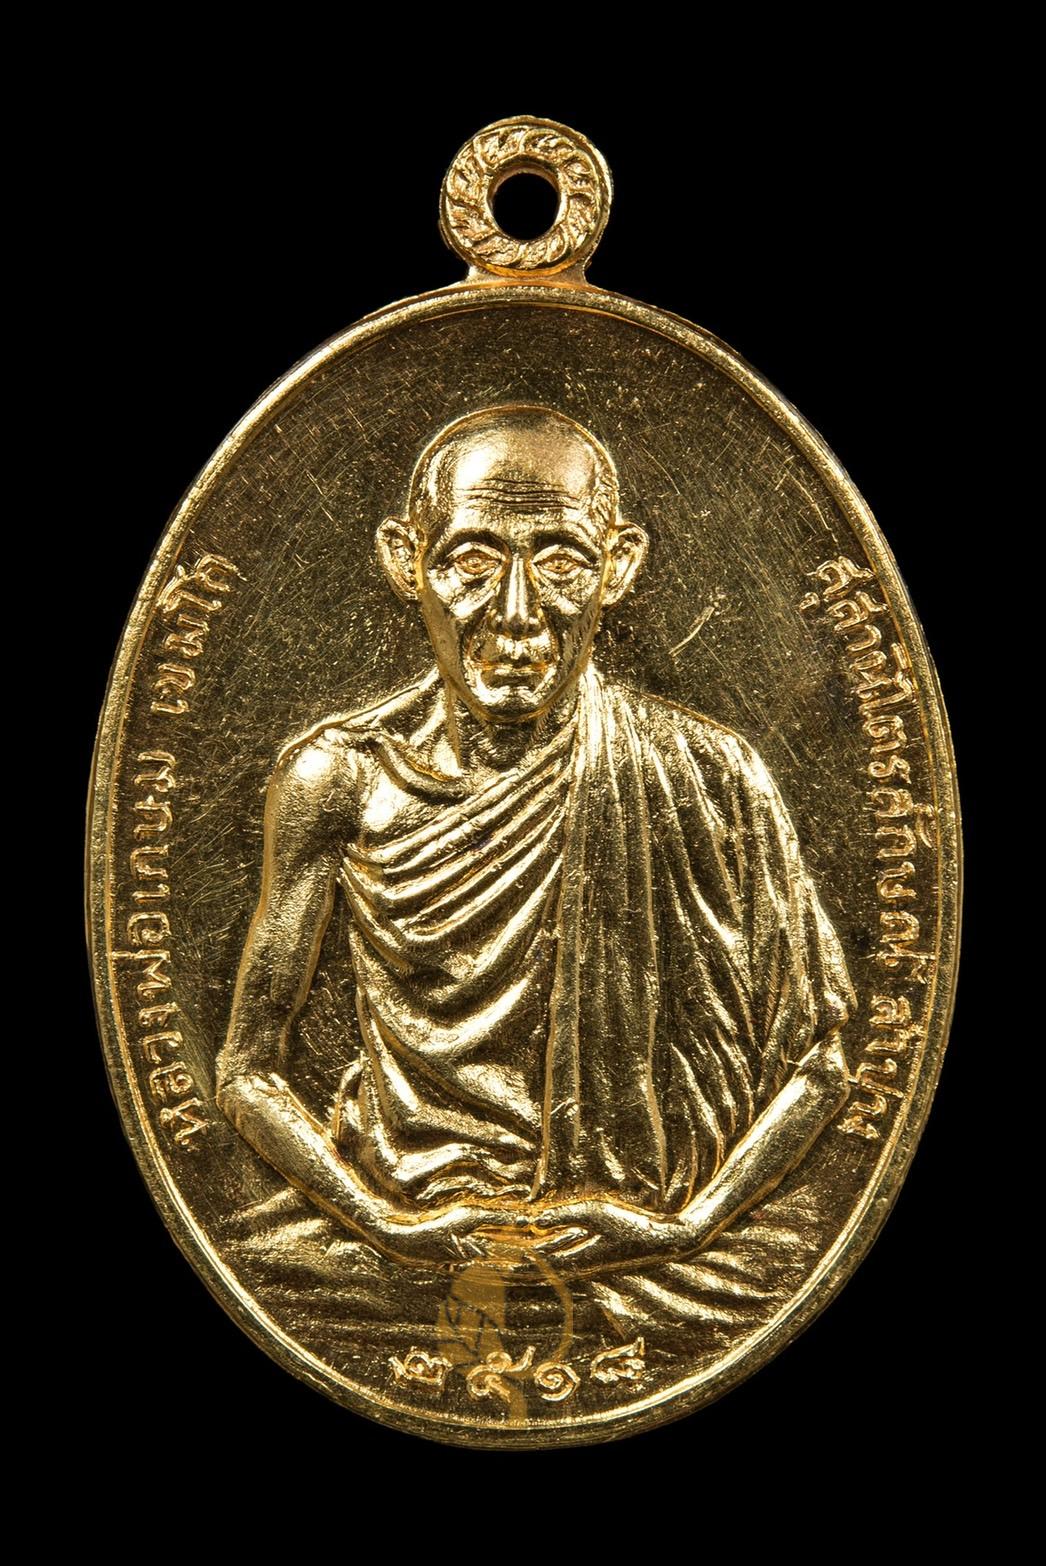 เหรียญค่ายสุรศักดิ์มนตรี หลวงพ่อเกษม เนื้อทองคำ ปี2518